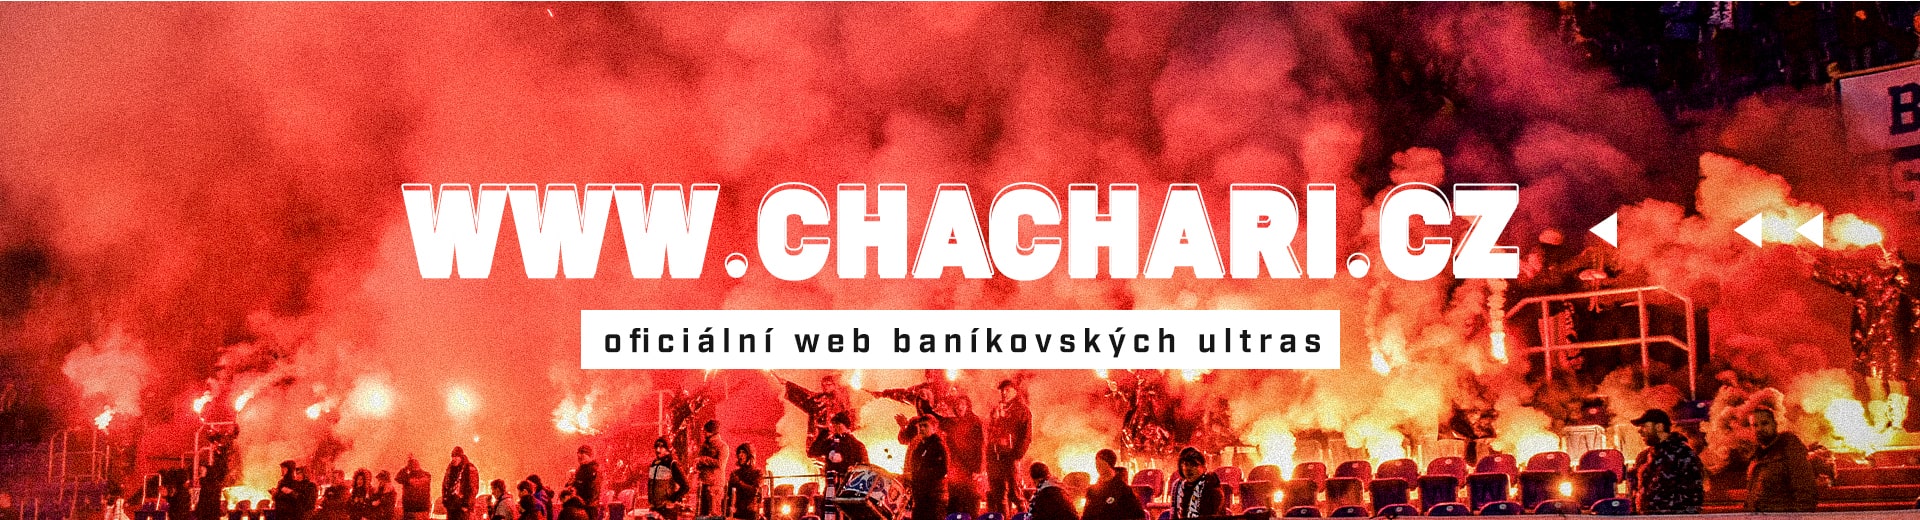 Chachari.cz